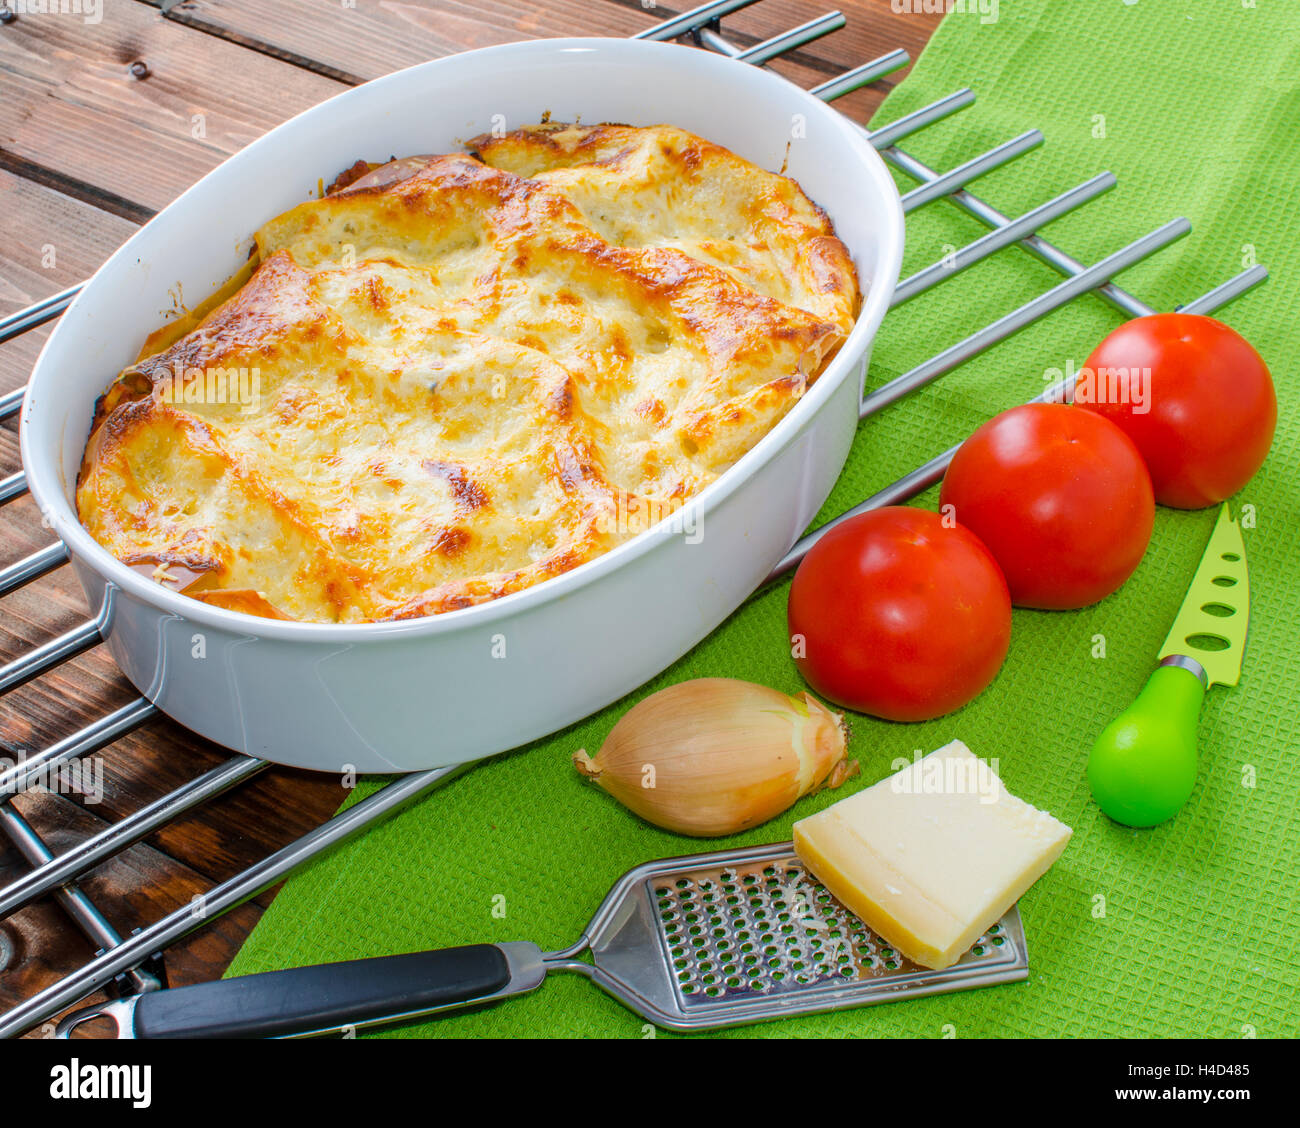 Lasagne alla bolognese in una teglia, pomodoro e formaggio parmagio Foto Stock